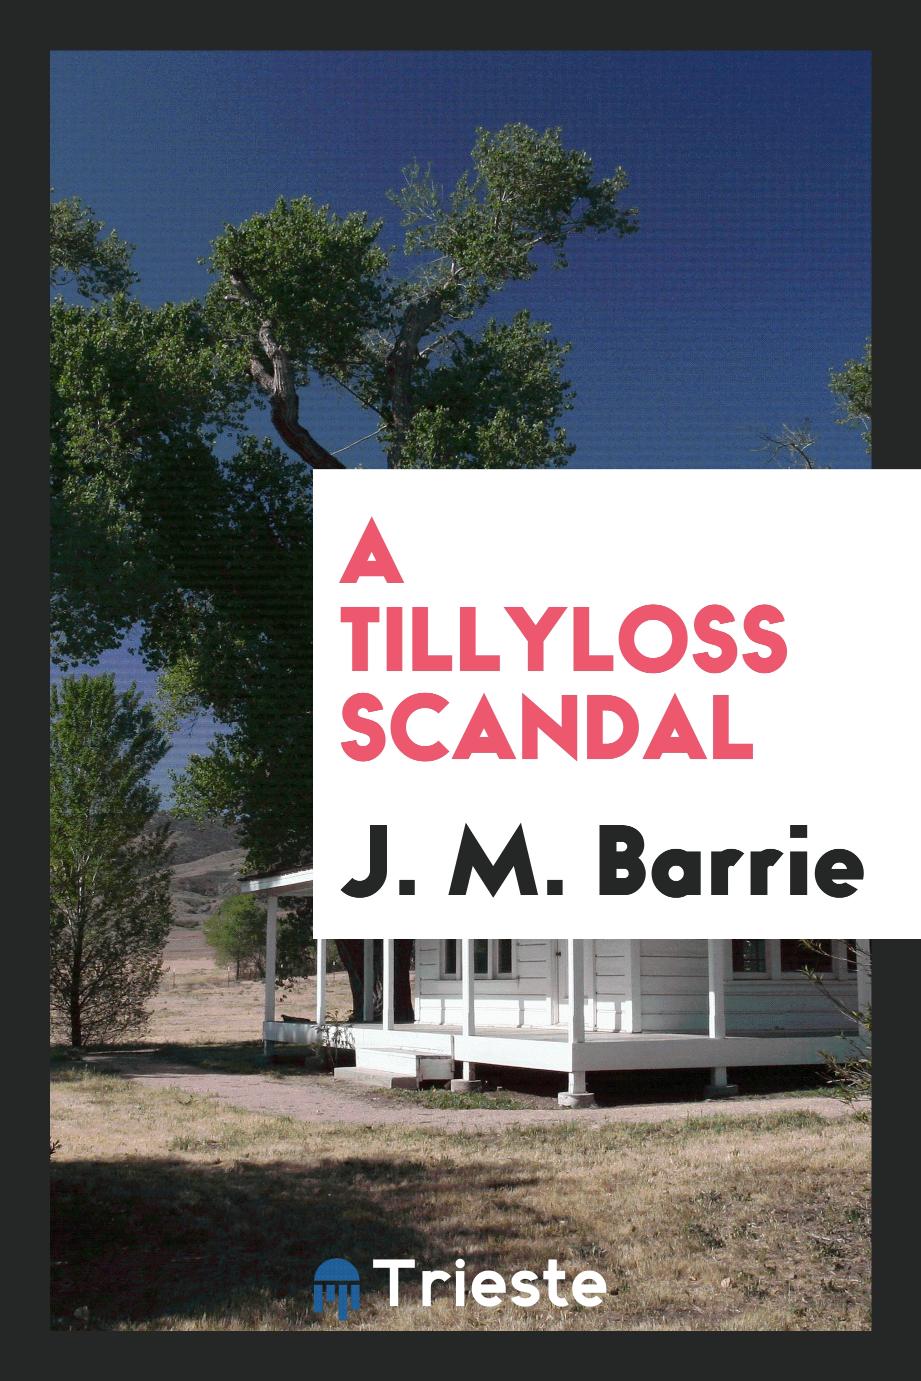 A Tillyloss scandal